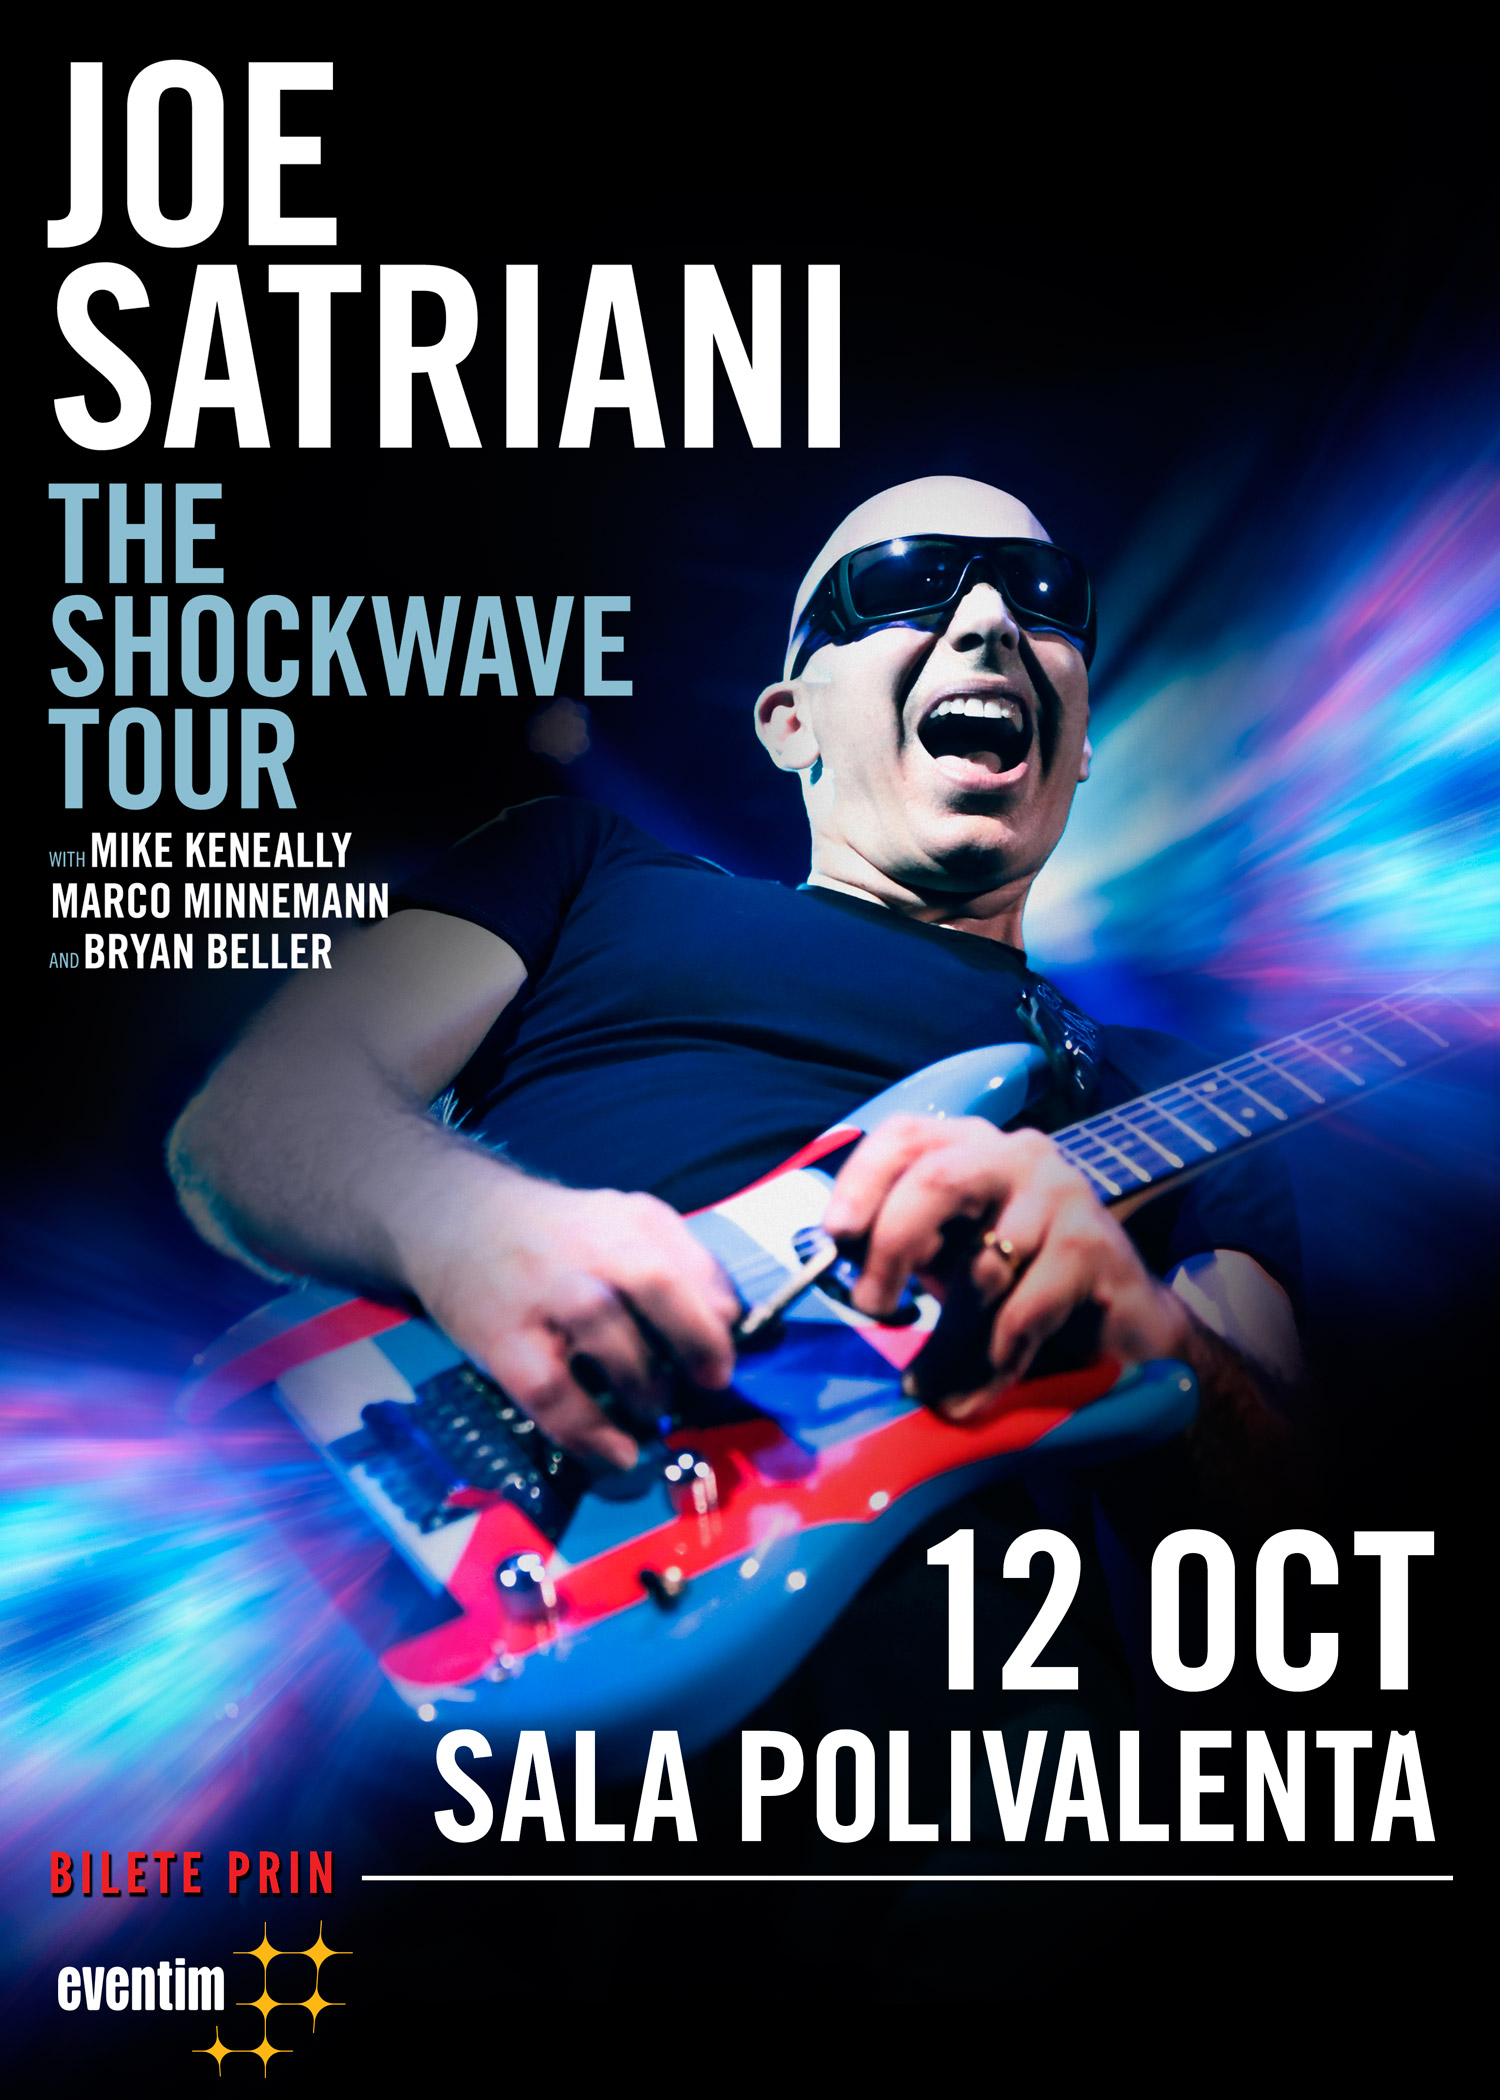 Superstarul american, JOE SATRIANI revine in Romania pentru doua concerte!